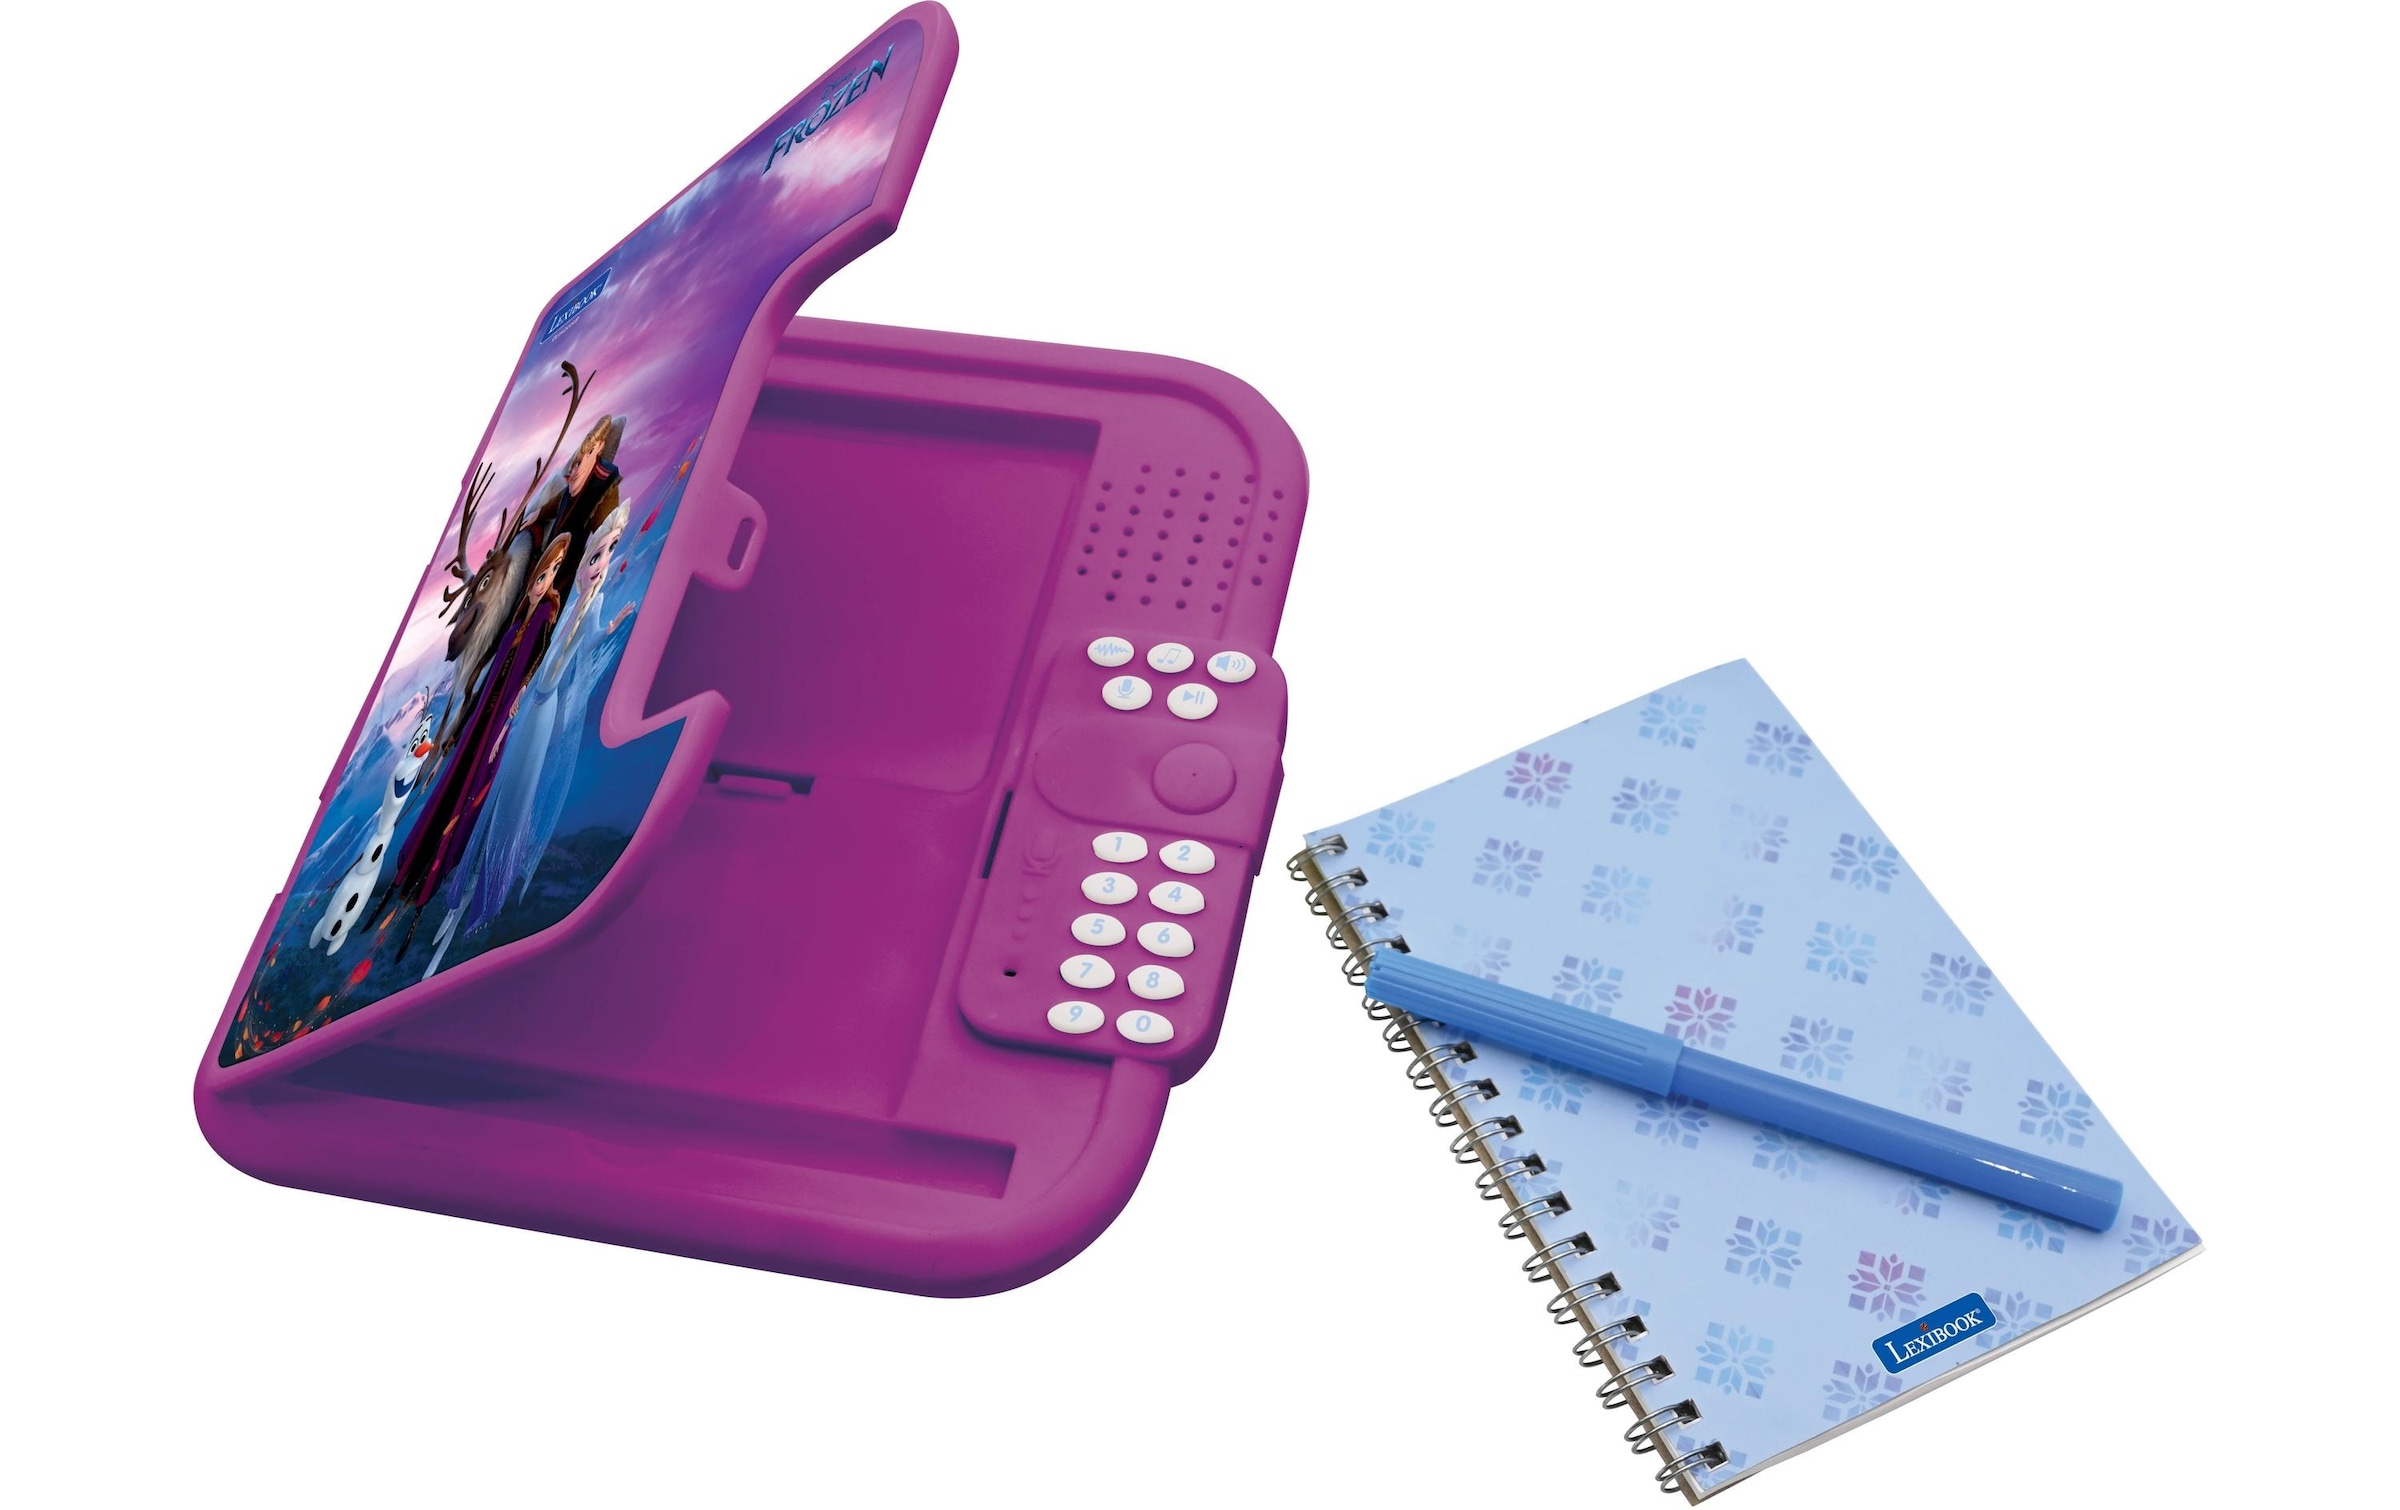 Lexibook® Elektronisches Tagebuch »Disney Frozen mit Notizbuch«